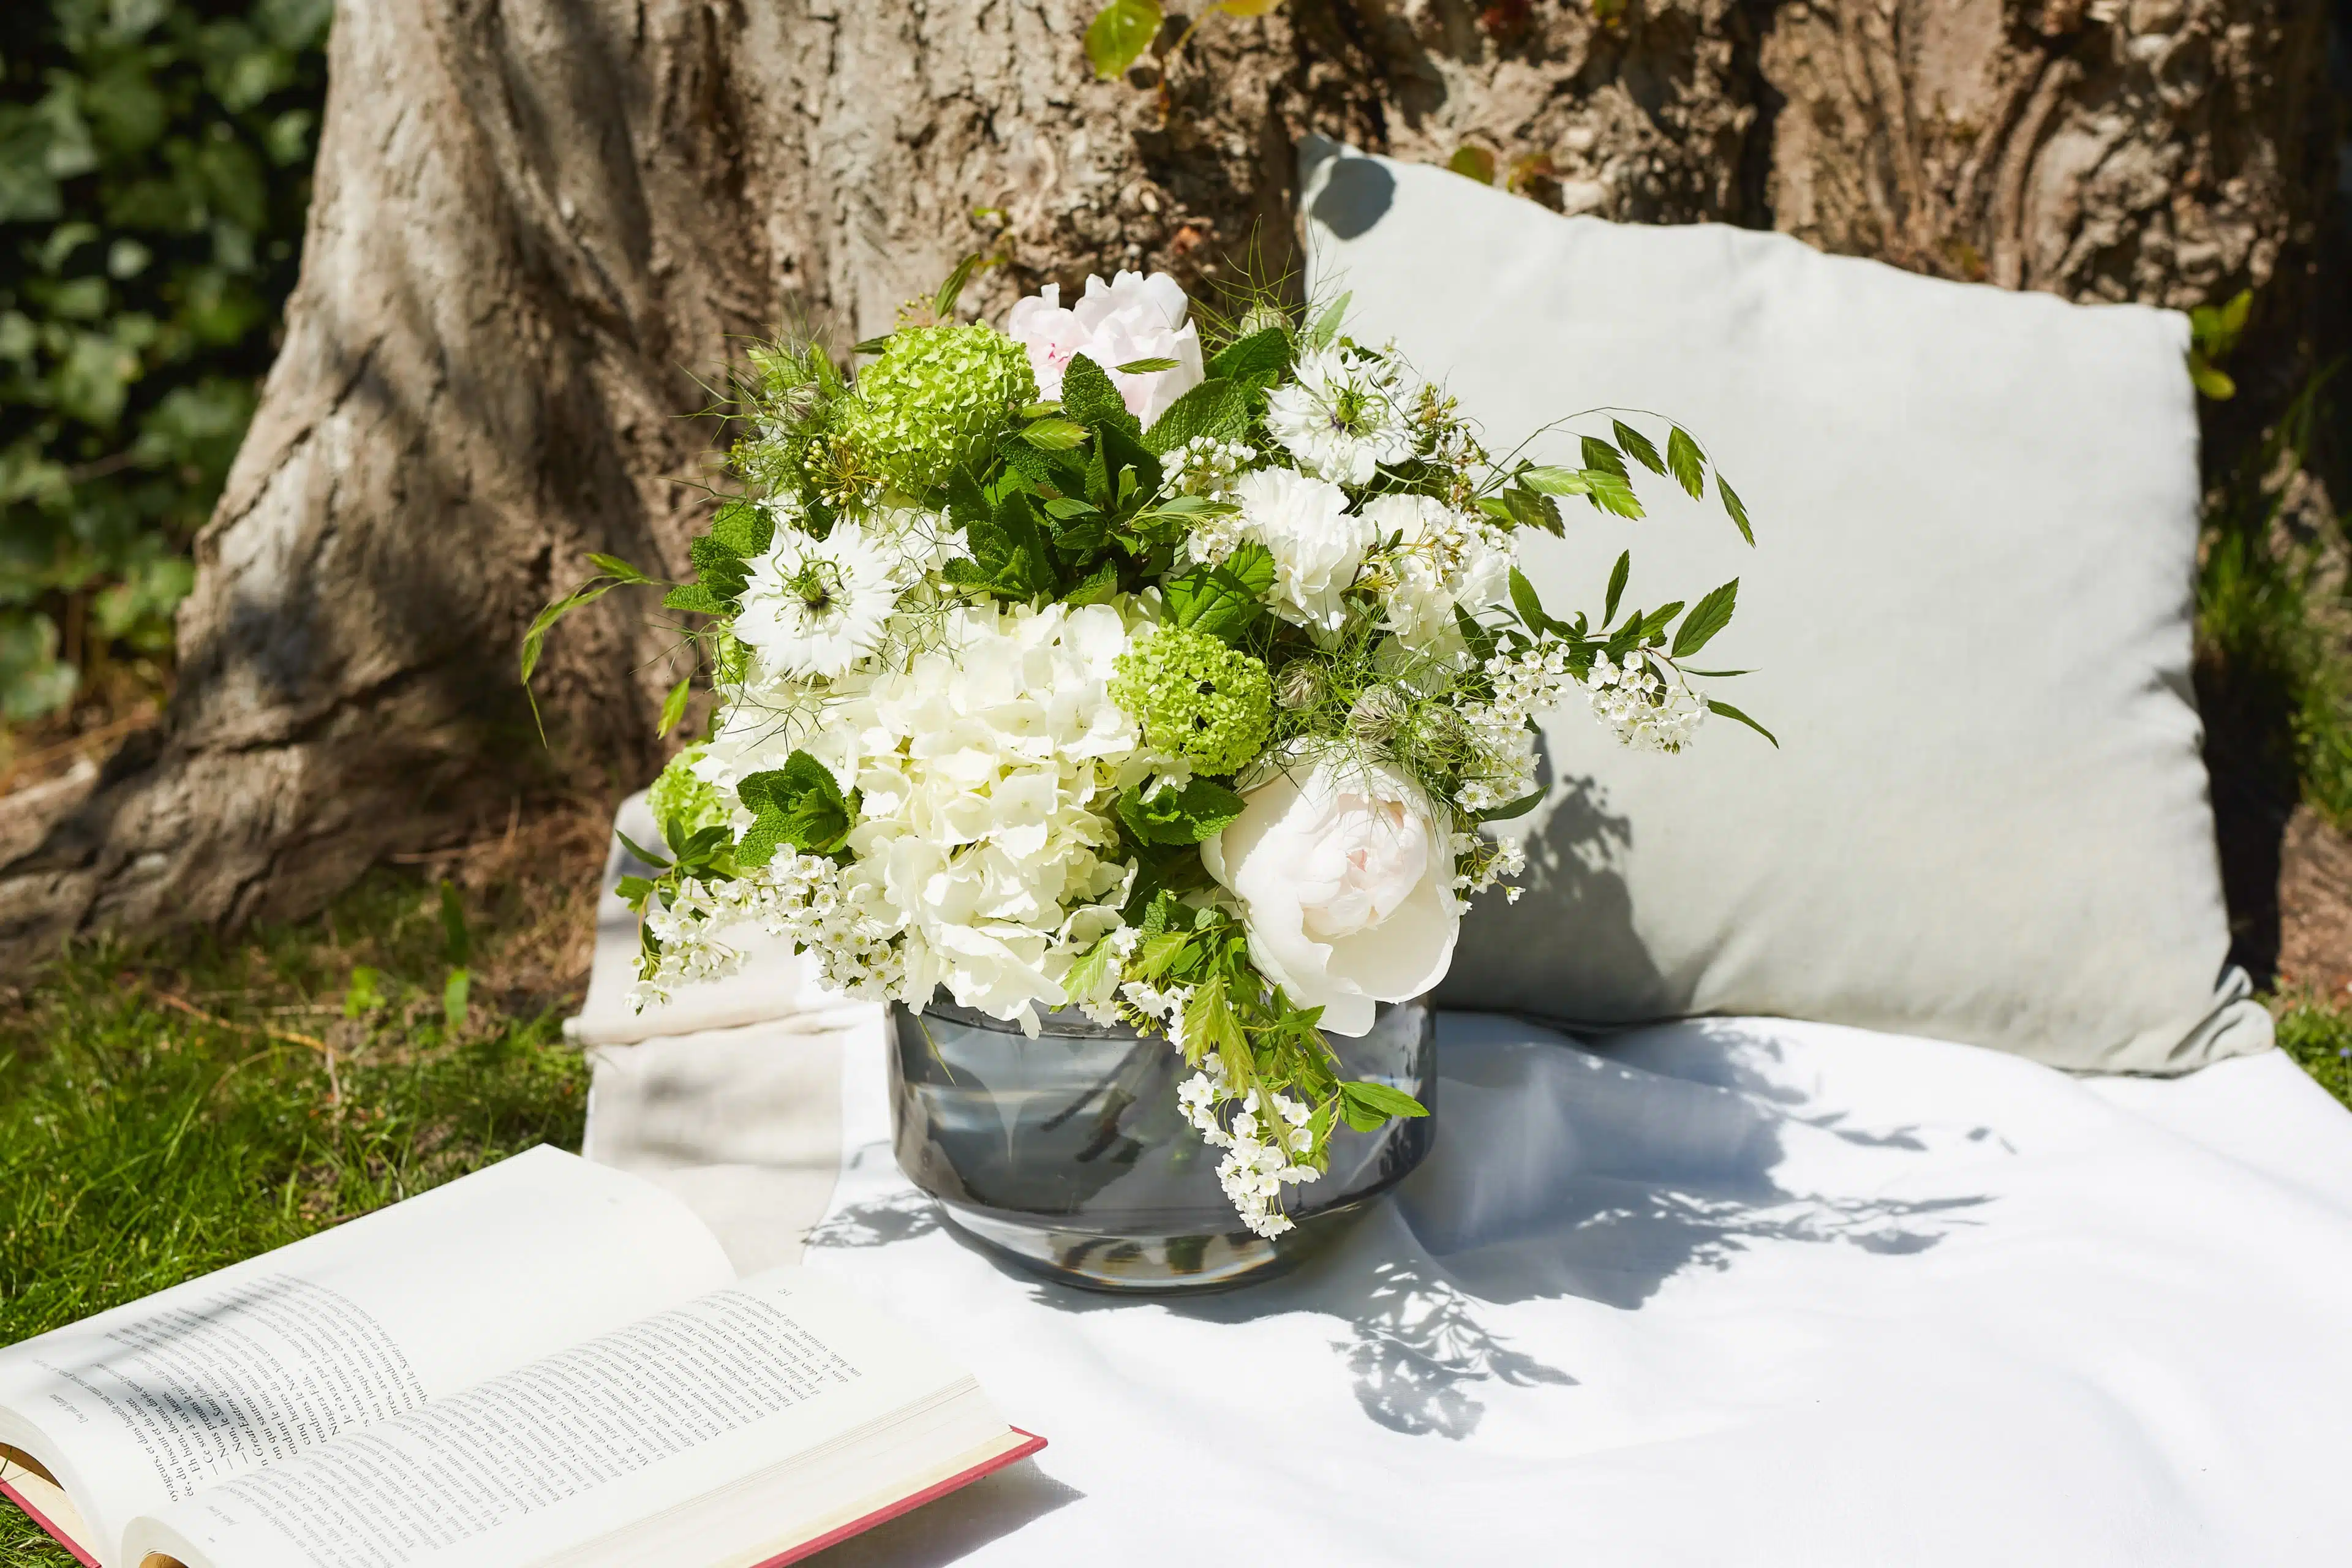 bouquet de pivoines blanches, hortensias blanc, nigelles blanches, cassis, chasmanthium, viburnum vert et spirée blanches